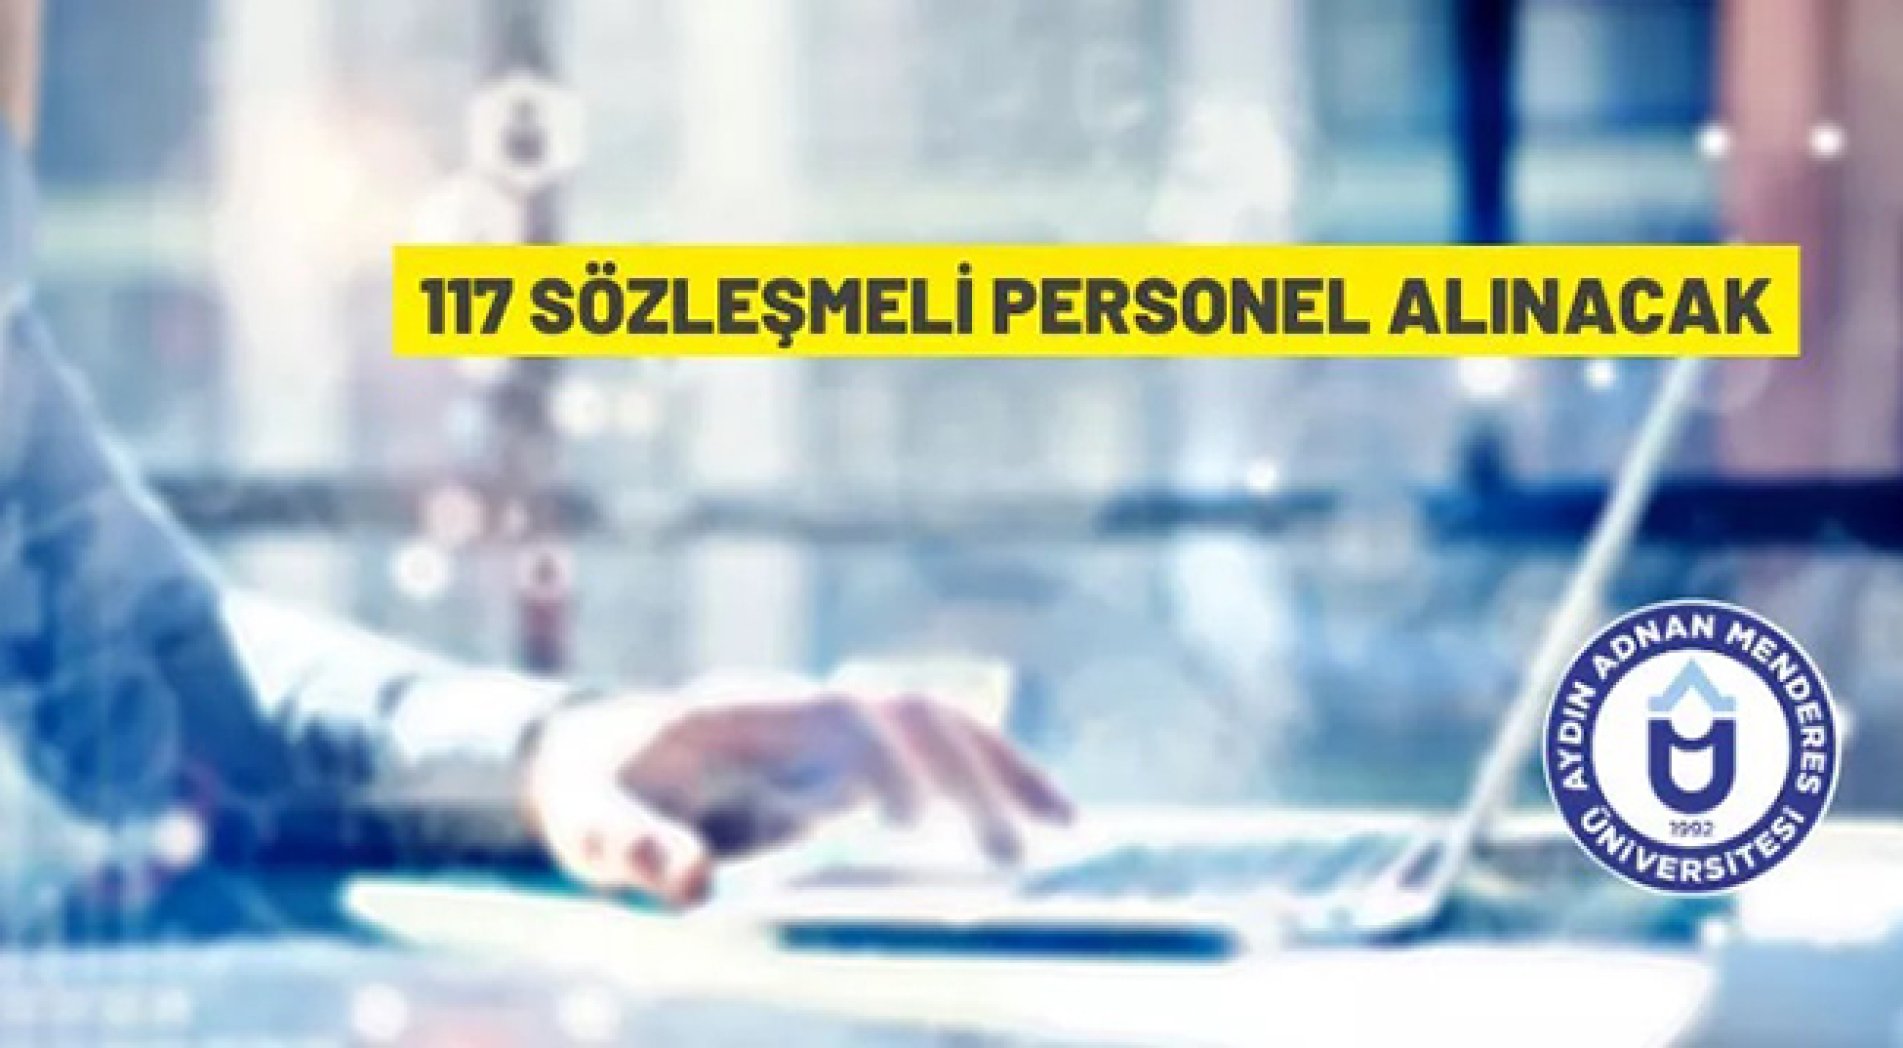 Aydın Adnan Menderes Üniversitesi 117 Sözleşmeli Personel alacak